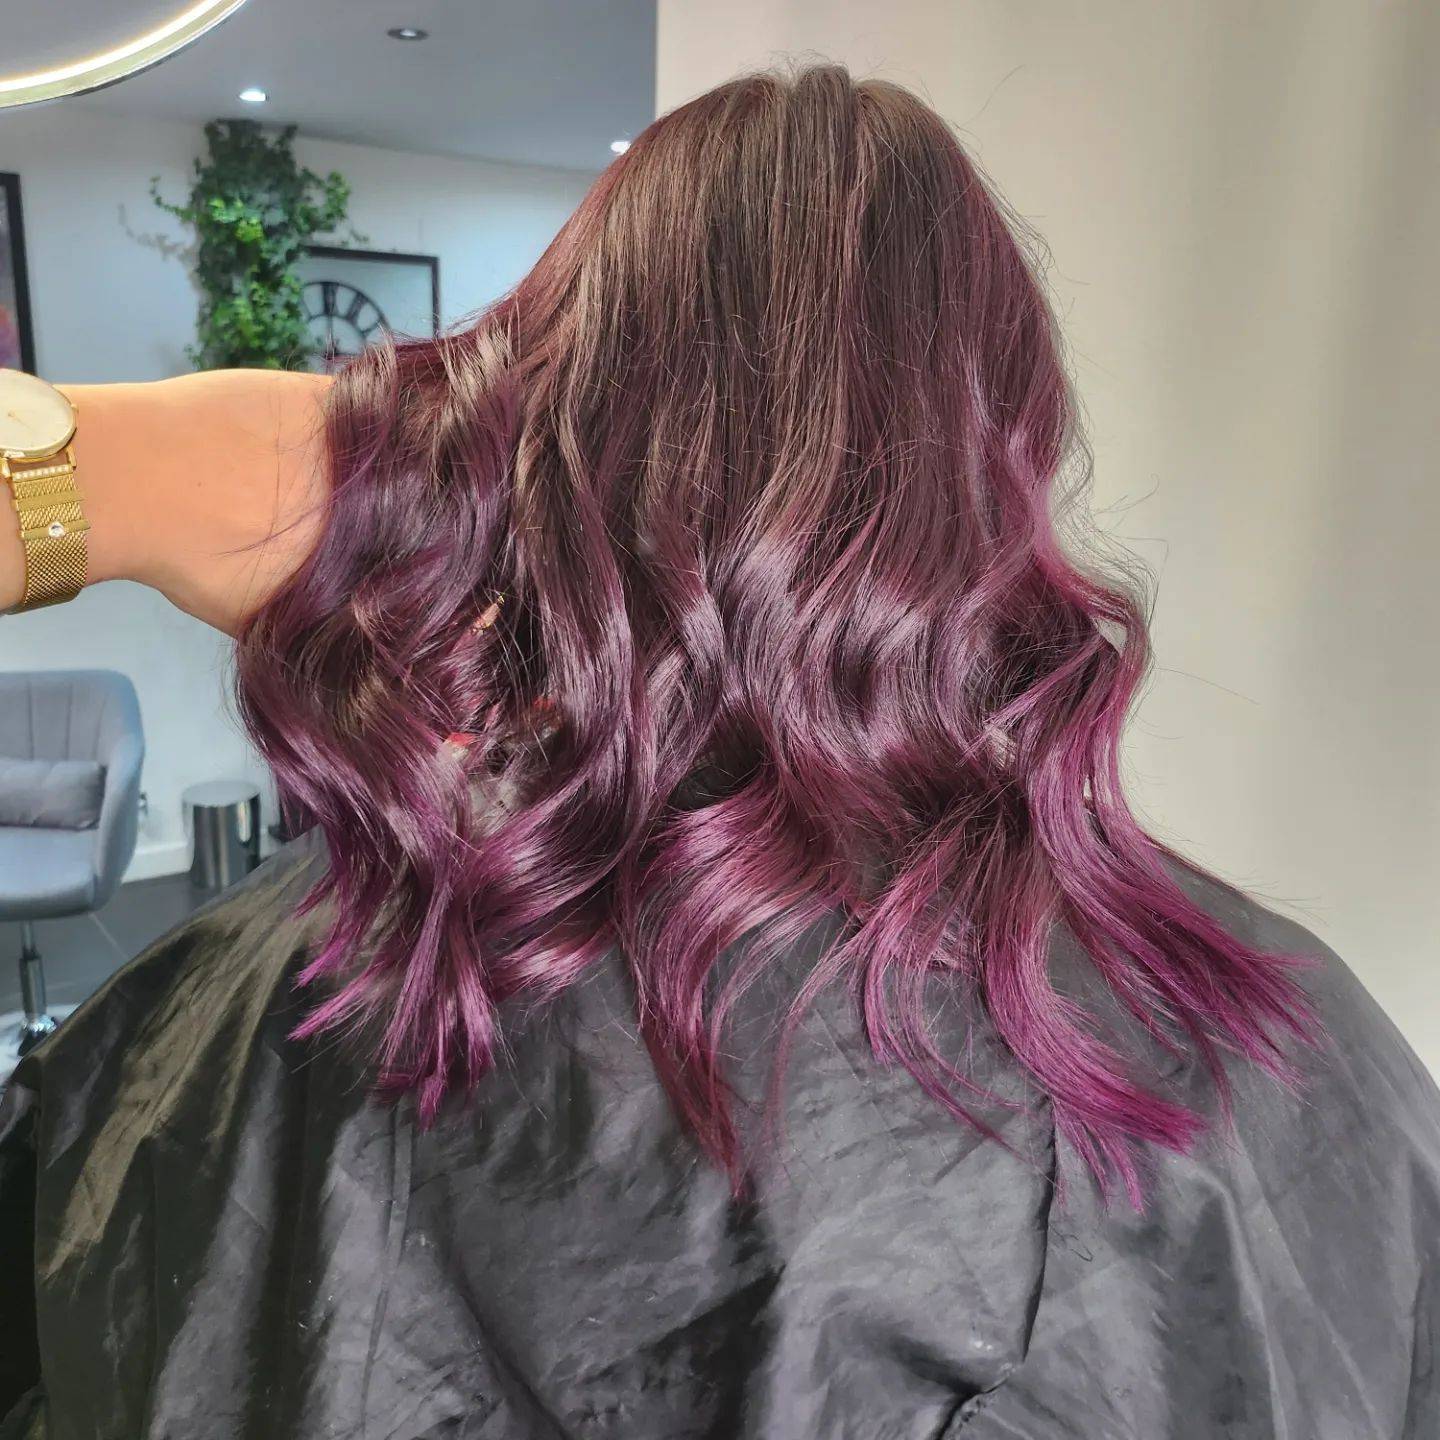 Burgundy hair color 206 burgundy hair color | burgundy hair color for women | burgundy hair color highlights Burgundy Hair Color